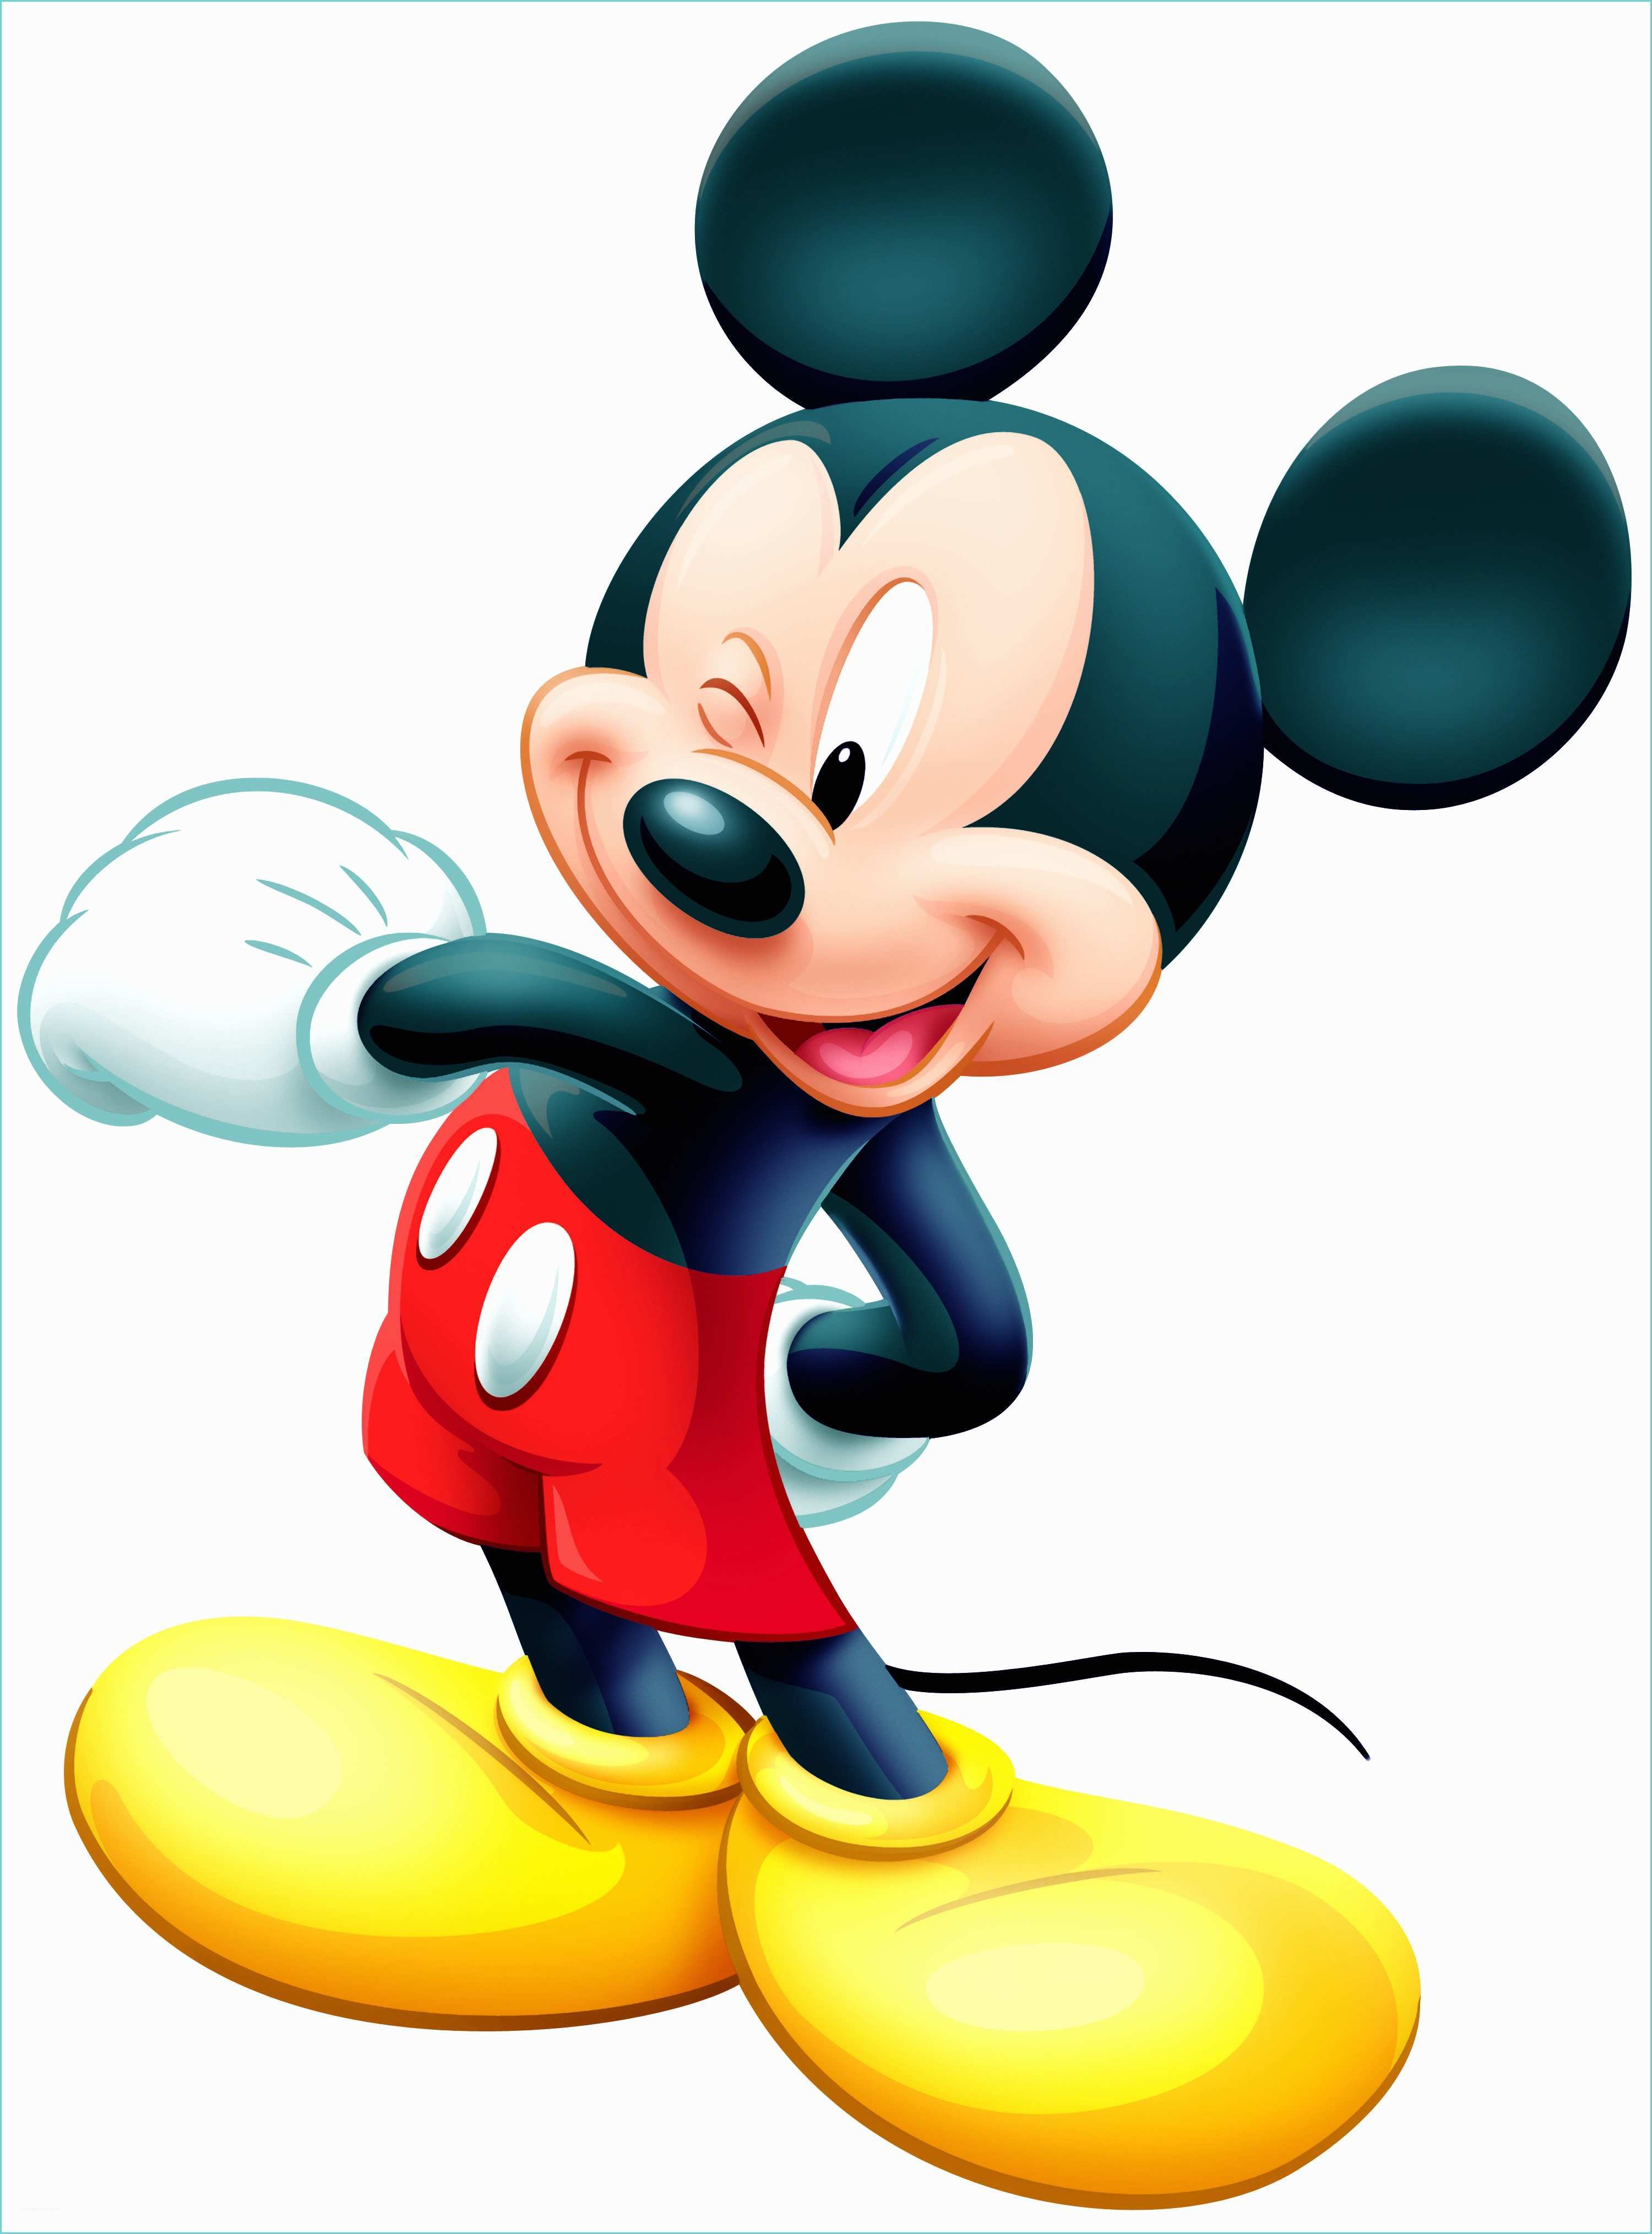 Poster Xxl Disney Poster Xxl Mickey Minnie Mouse Disney